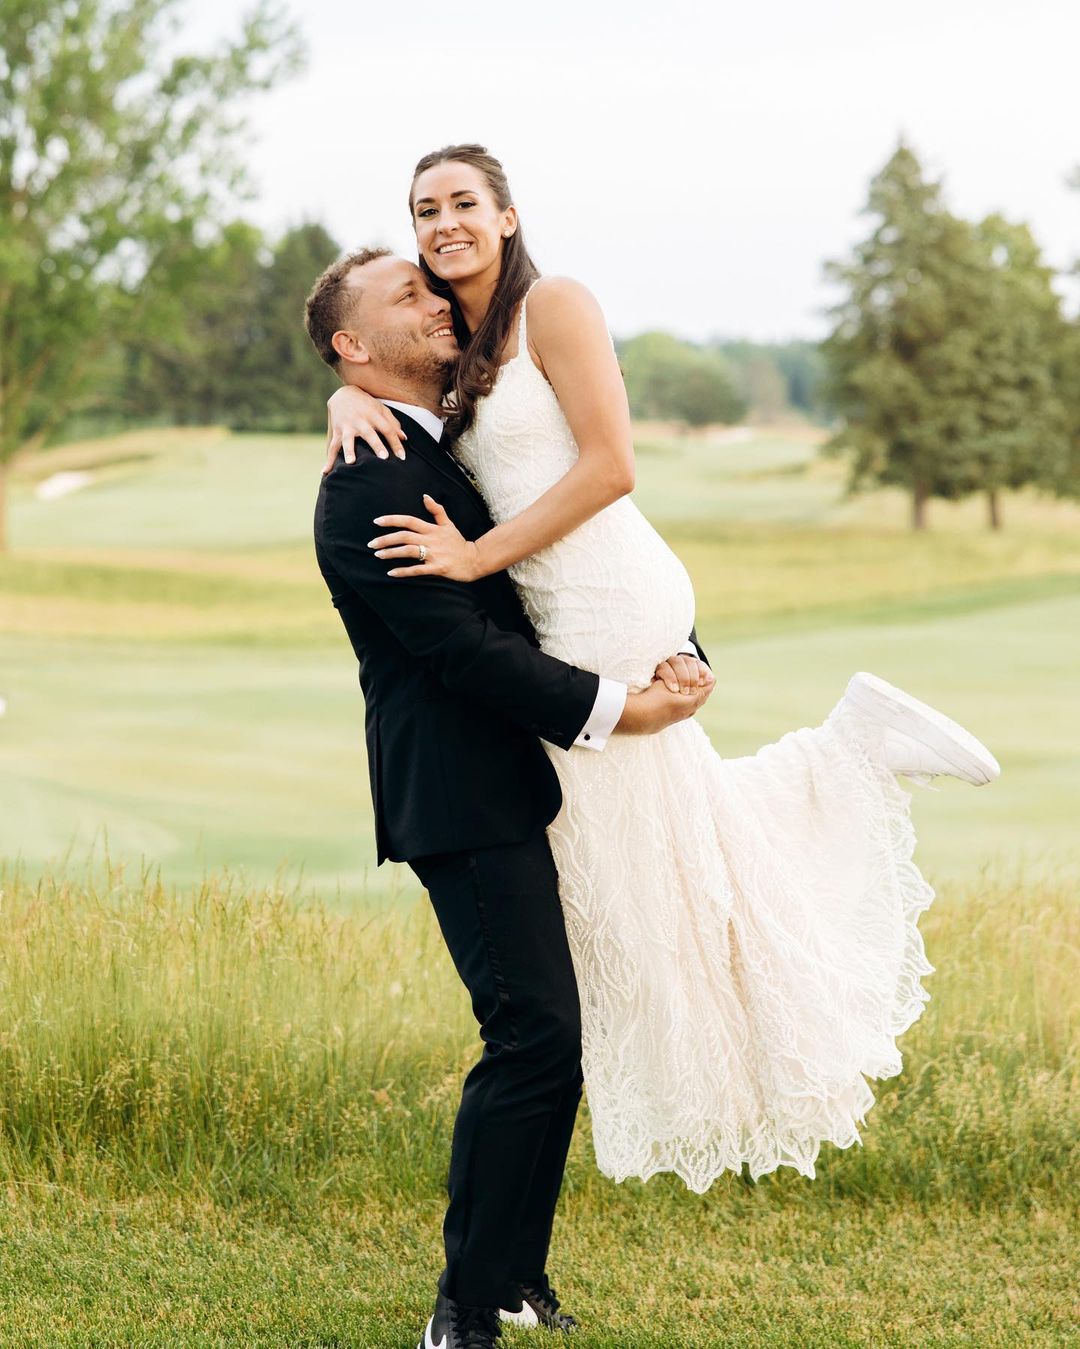 Alec Ingold & His Wife Alexa On Their Wedding Day